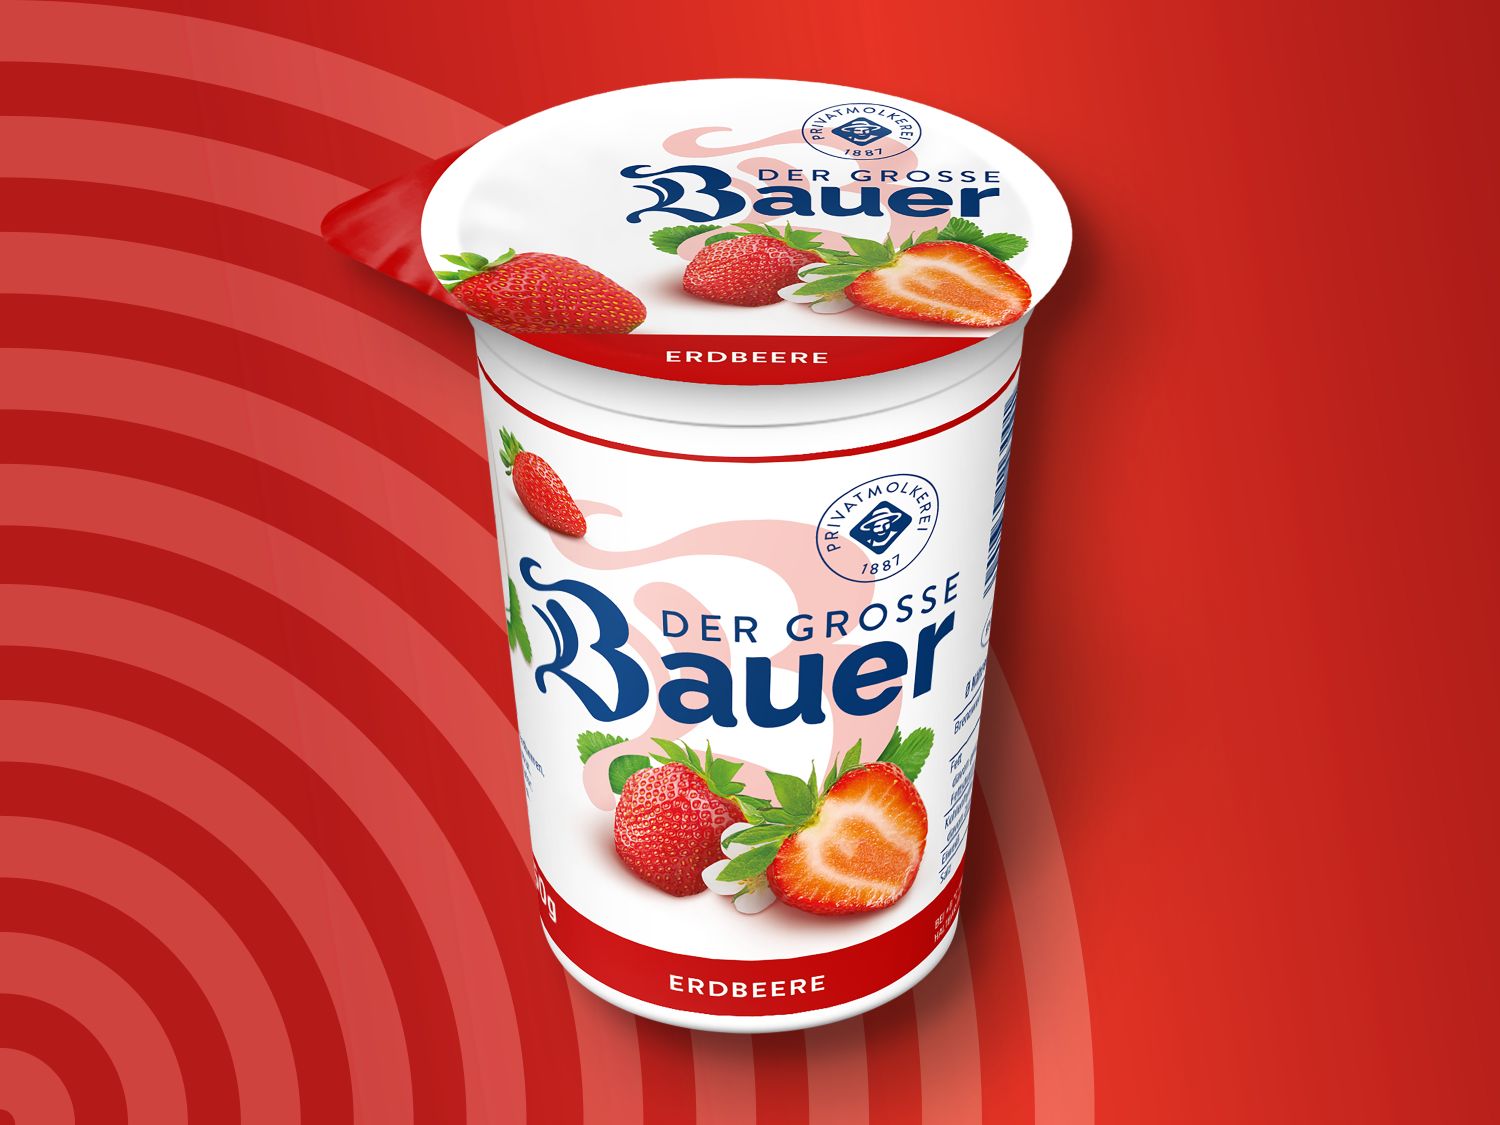 Der Große Bauer Joghurt - Lidl Deutschland